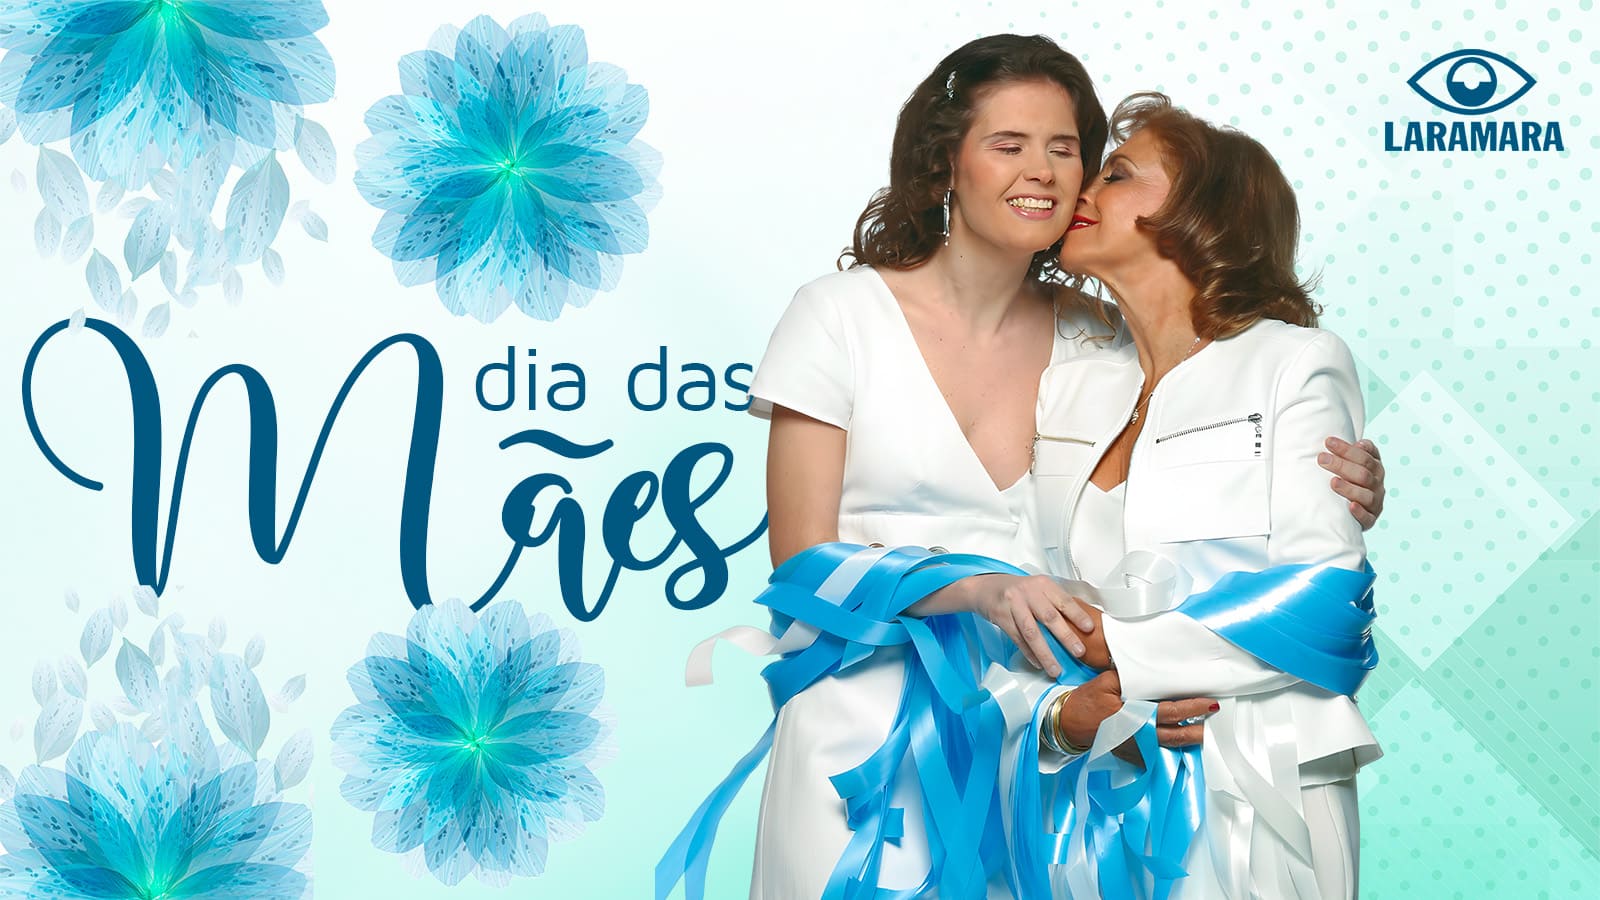 Arte com texto: Dia das Mães. Imagens de flores. Logo da Laramara. Foto da mãe Mara Siauly abraçada à sua filha Lara. As duas usam roupas brancas e carregam fitas brancas e azuis.